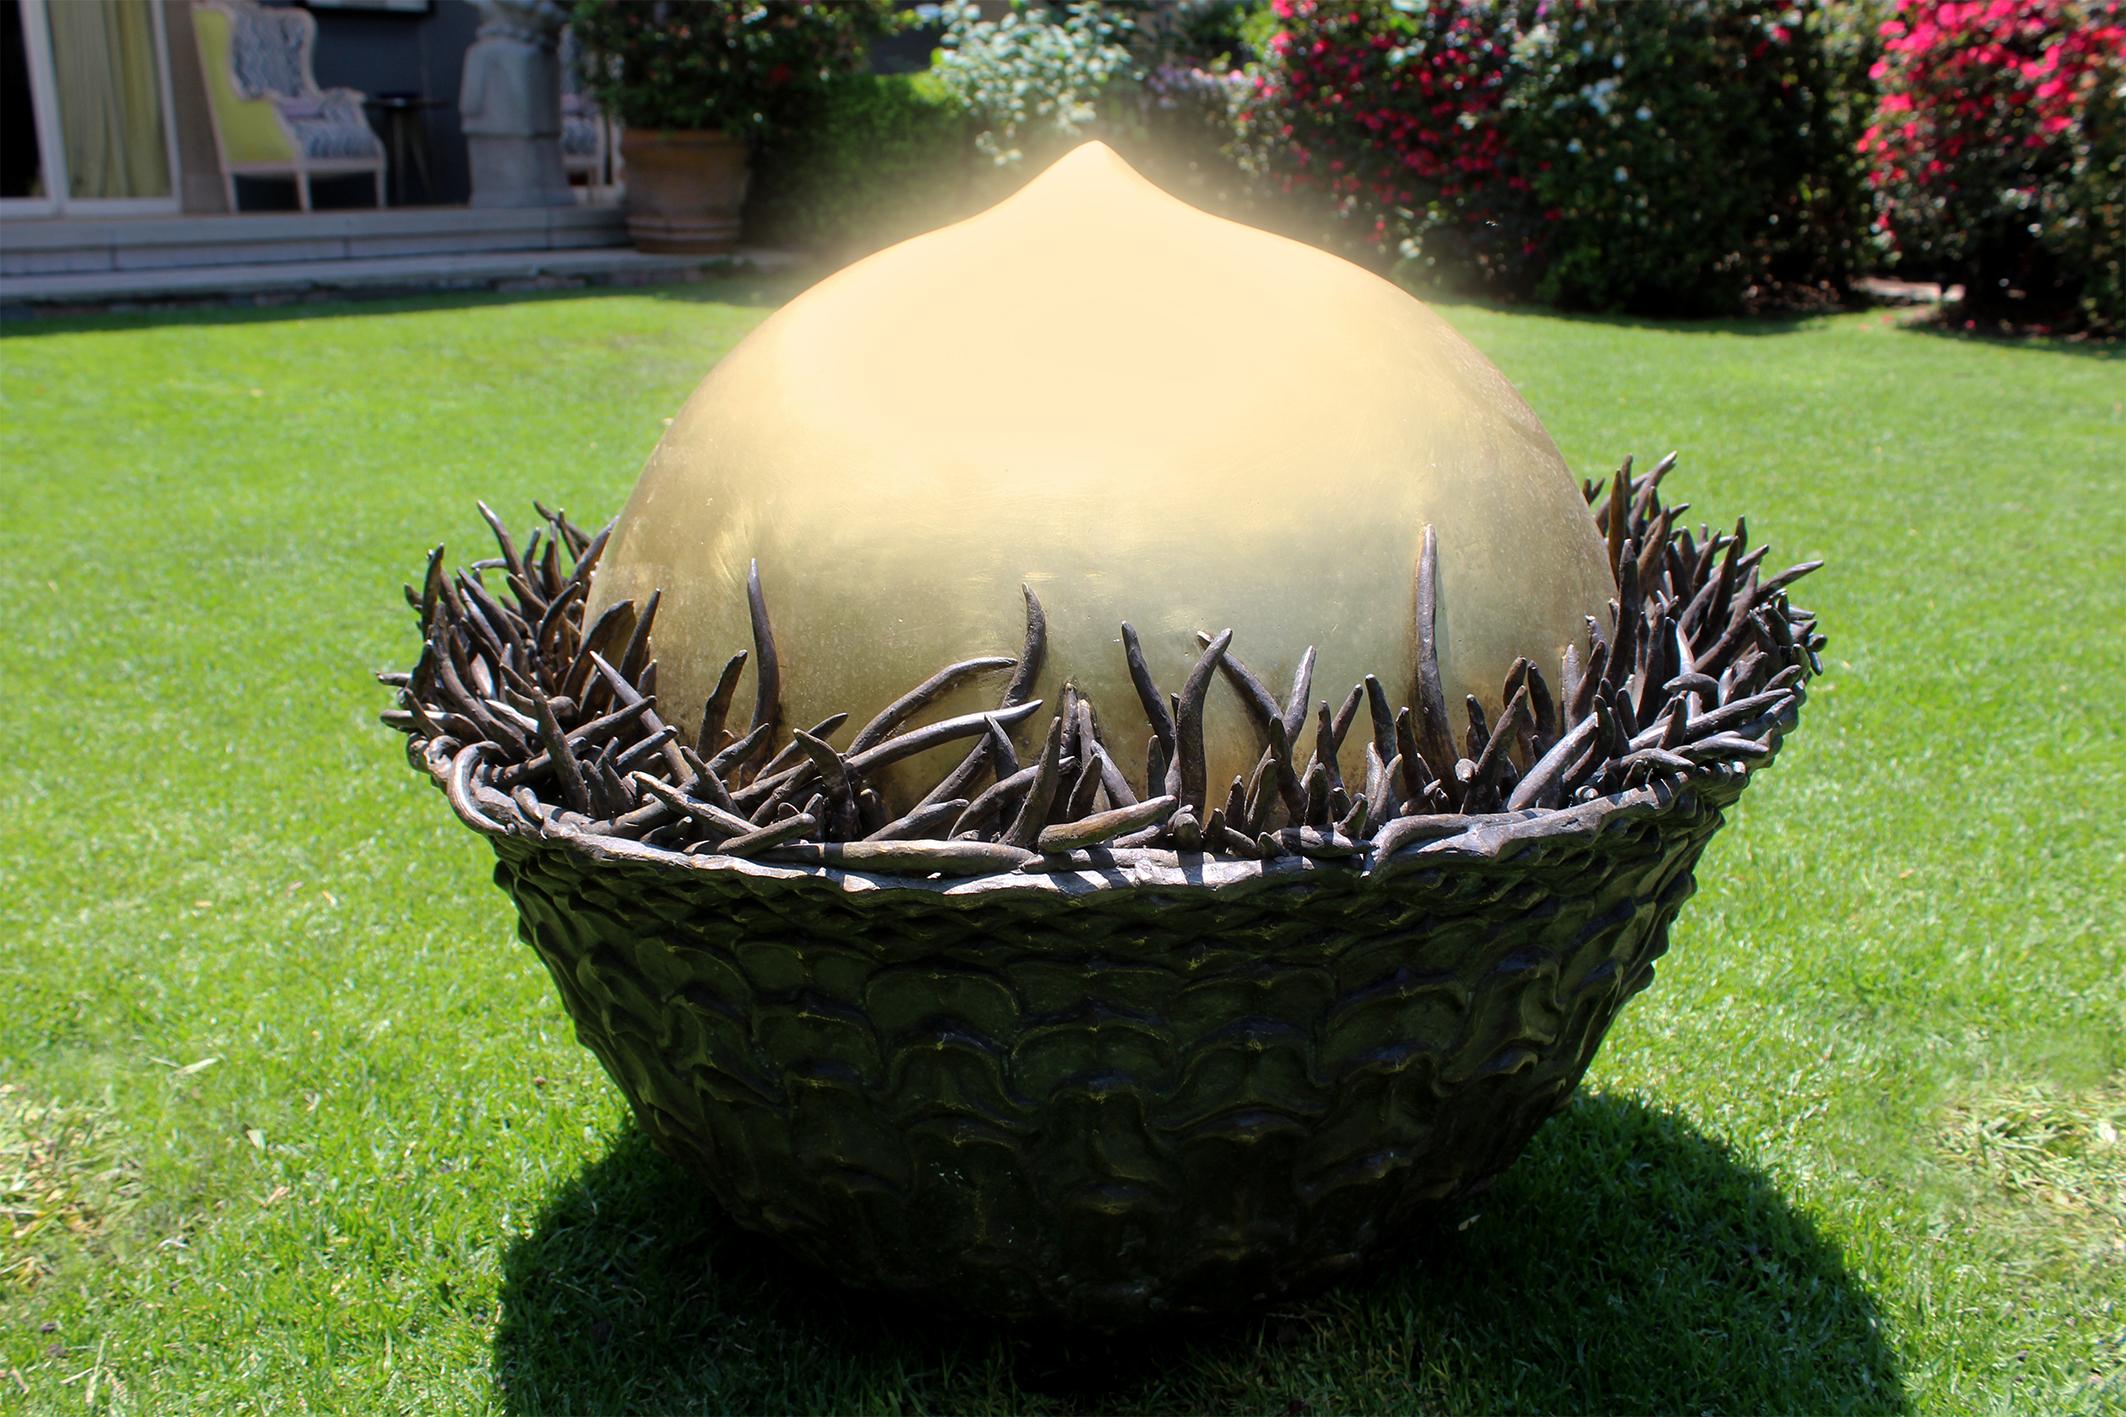 #Garten #Skulptur #Kontempraryart #Dekoration #Außenbereich #Bronze #Natur #Eichel 

Diese große Bronzeskulptur ist ein zeitgenössisches Kunstwerk, das auch als Kunst für den Garten oder den Außenbereich dienen kann.

María José de la Macorra